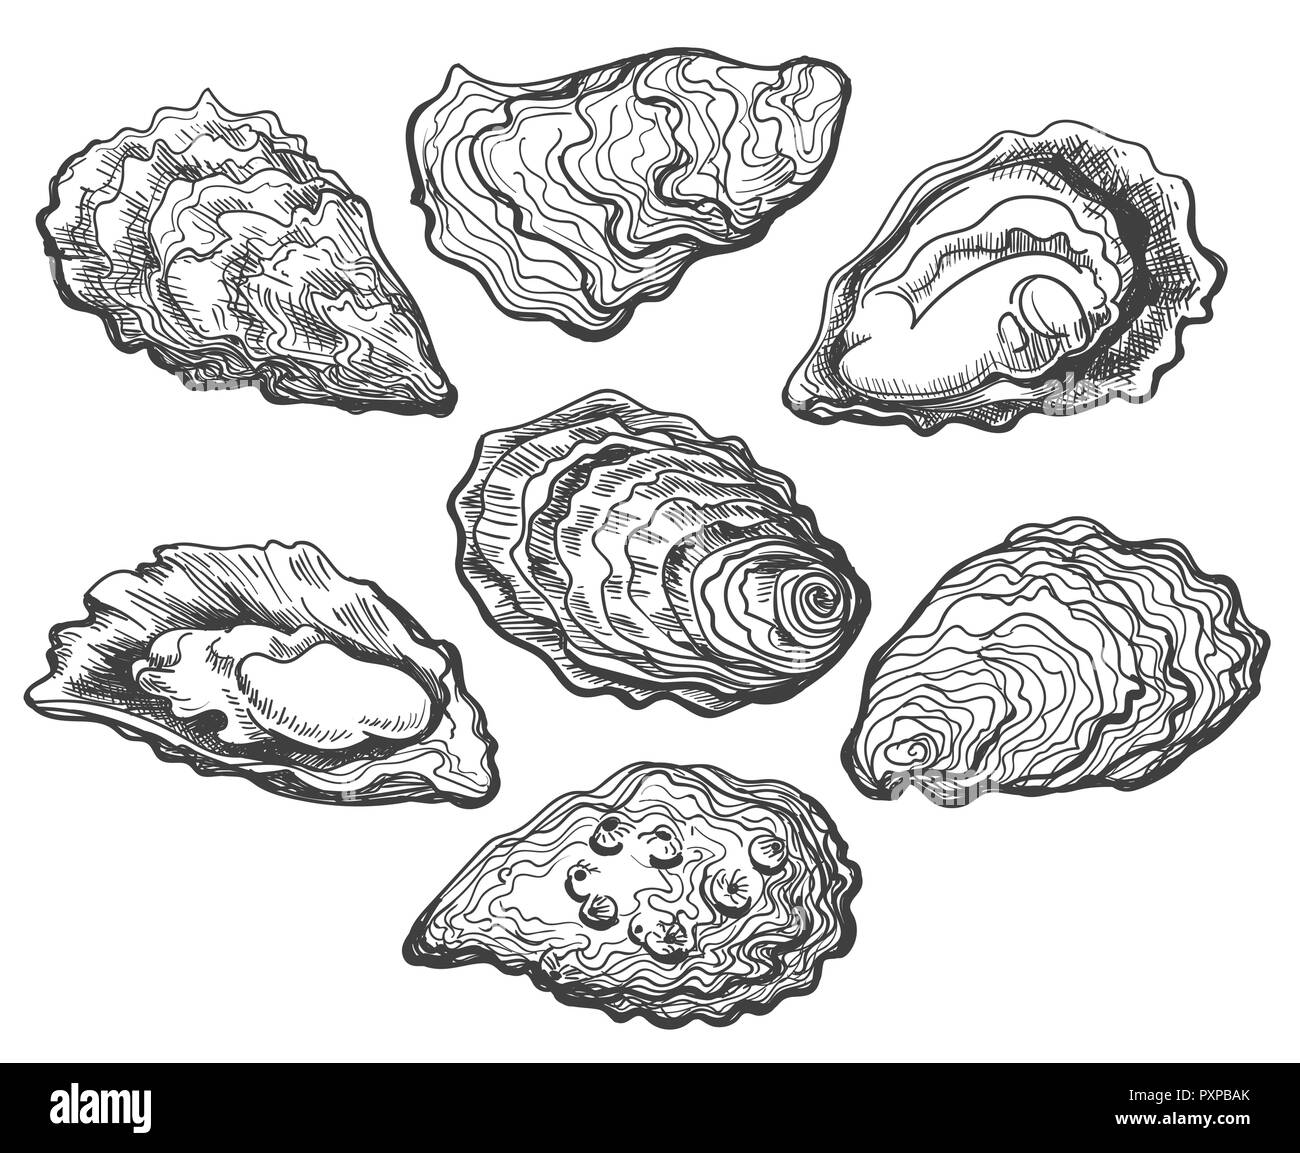 Les huîtres. Coquille d'Huître vector set, dessinés à la main des huîtres fraîches isolées sur fond blanc pour faites maison ou décoration alimentaire délicatesse Illustration de Vecteur